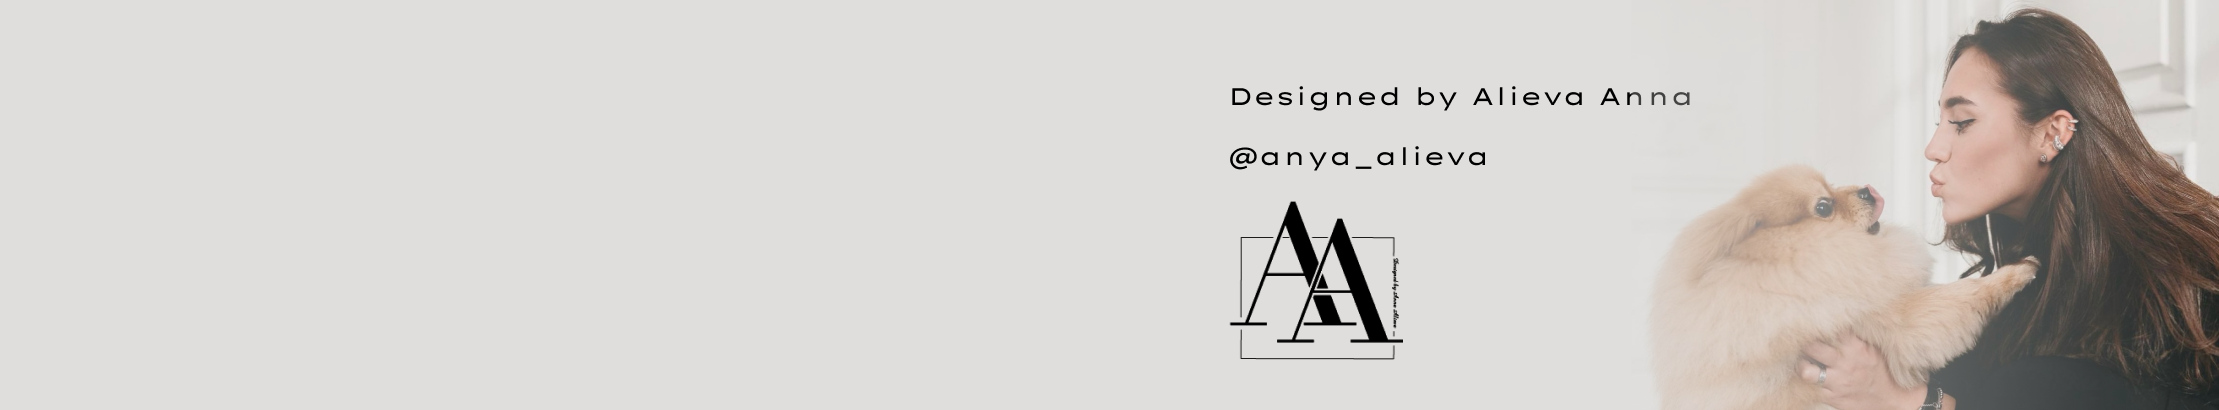 Anna Alieva's profile banner